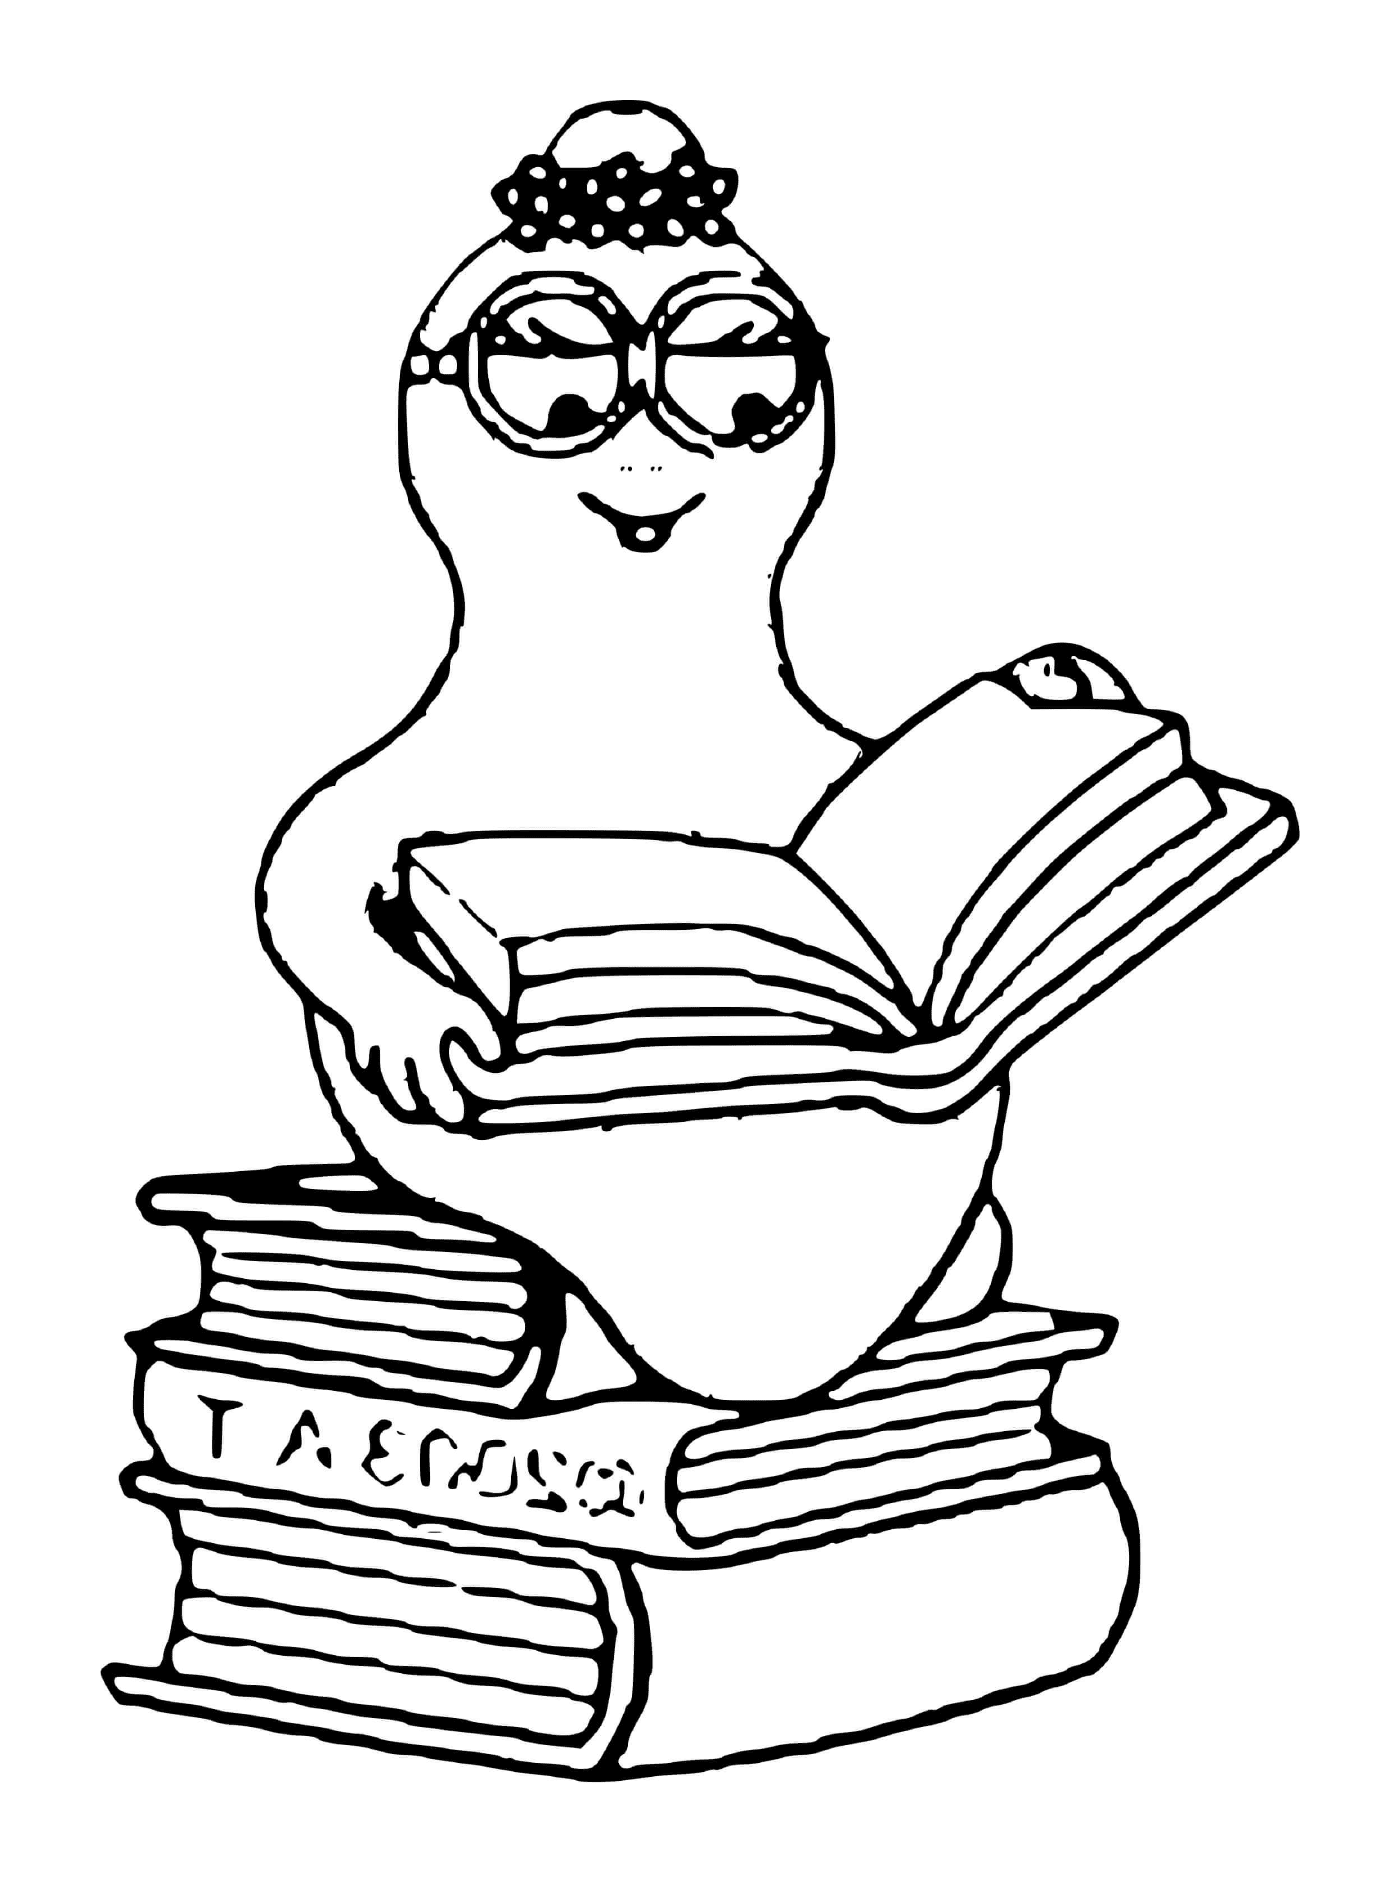  Una persona sentada en un montón de libros 